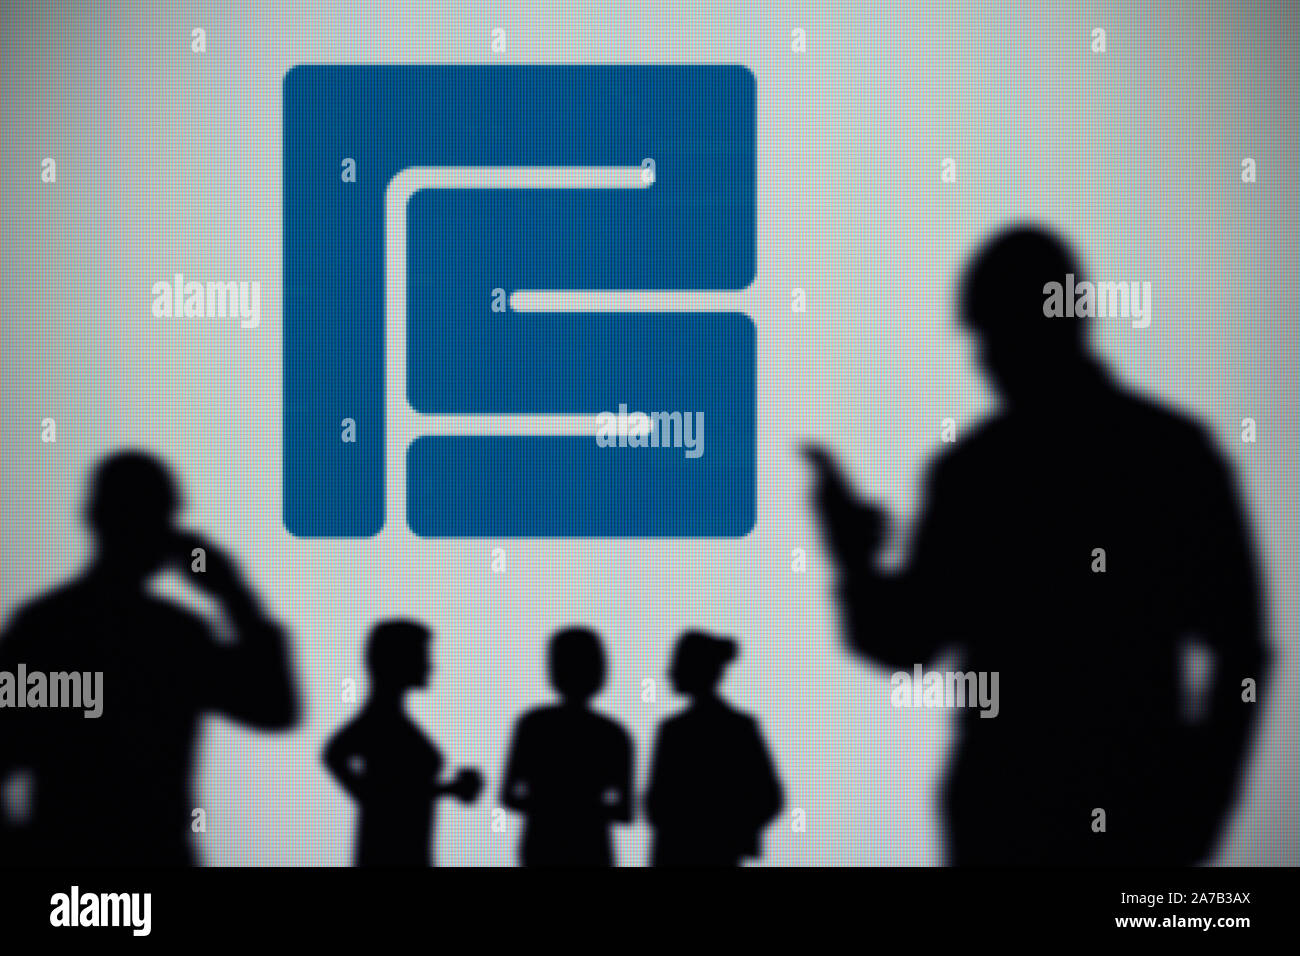 El Pershing Square Holdings logotipo es visto en una pantalla LED en el fondo mientras una silueta persona utiliza un smartphone (uso Editorial solamente) Foto de stock